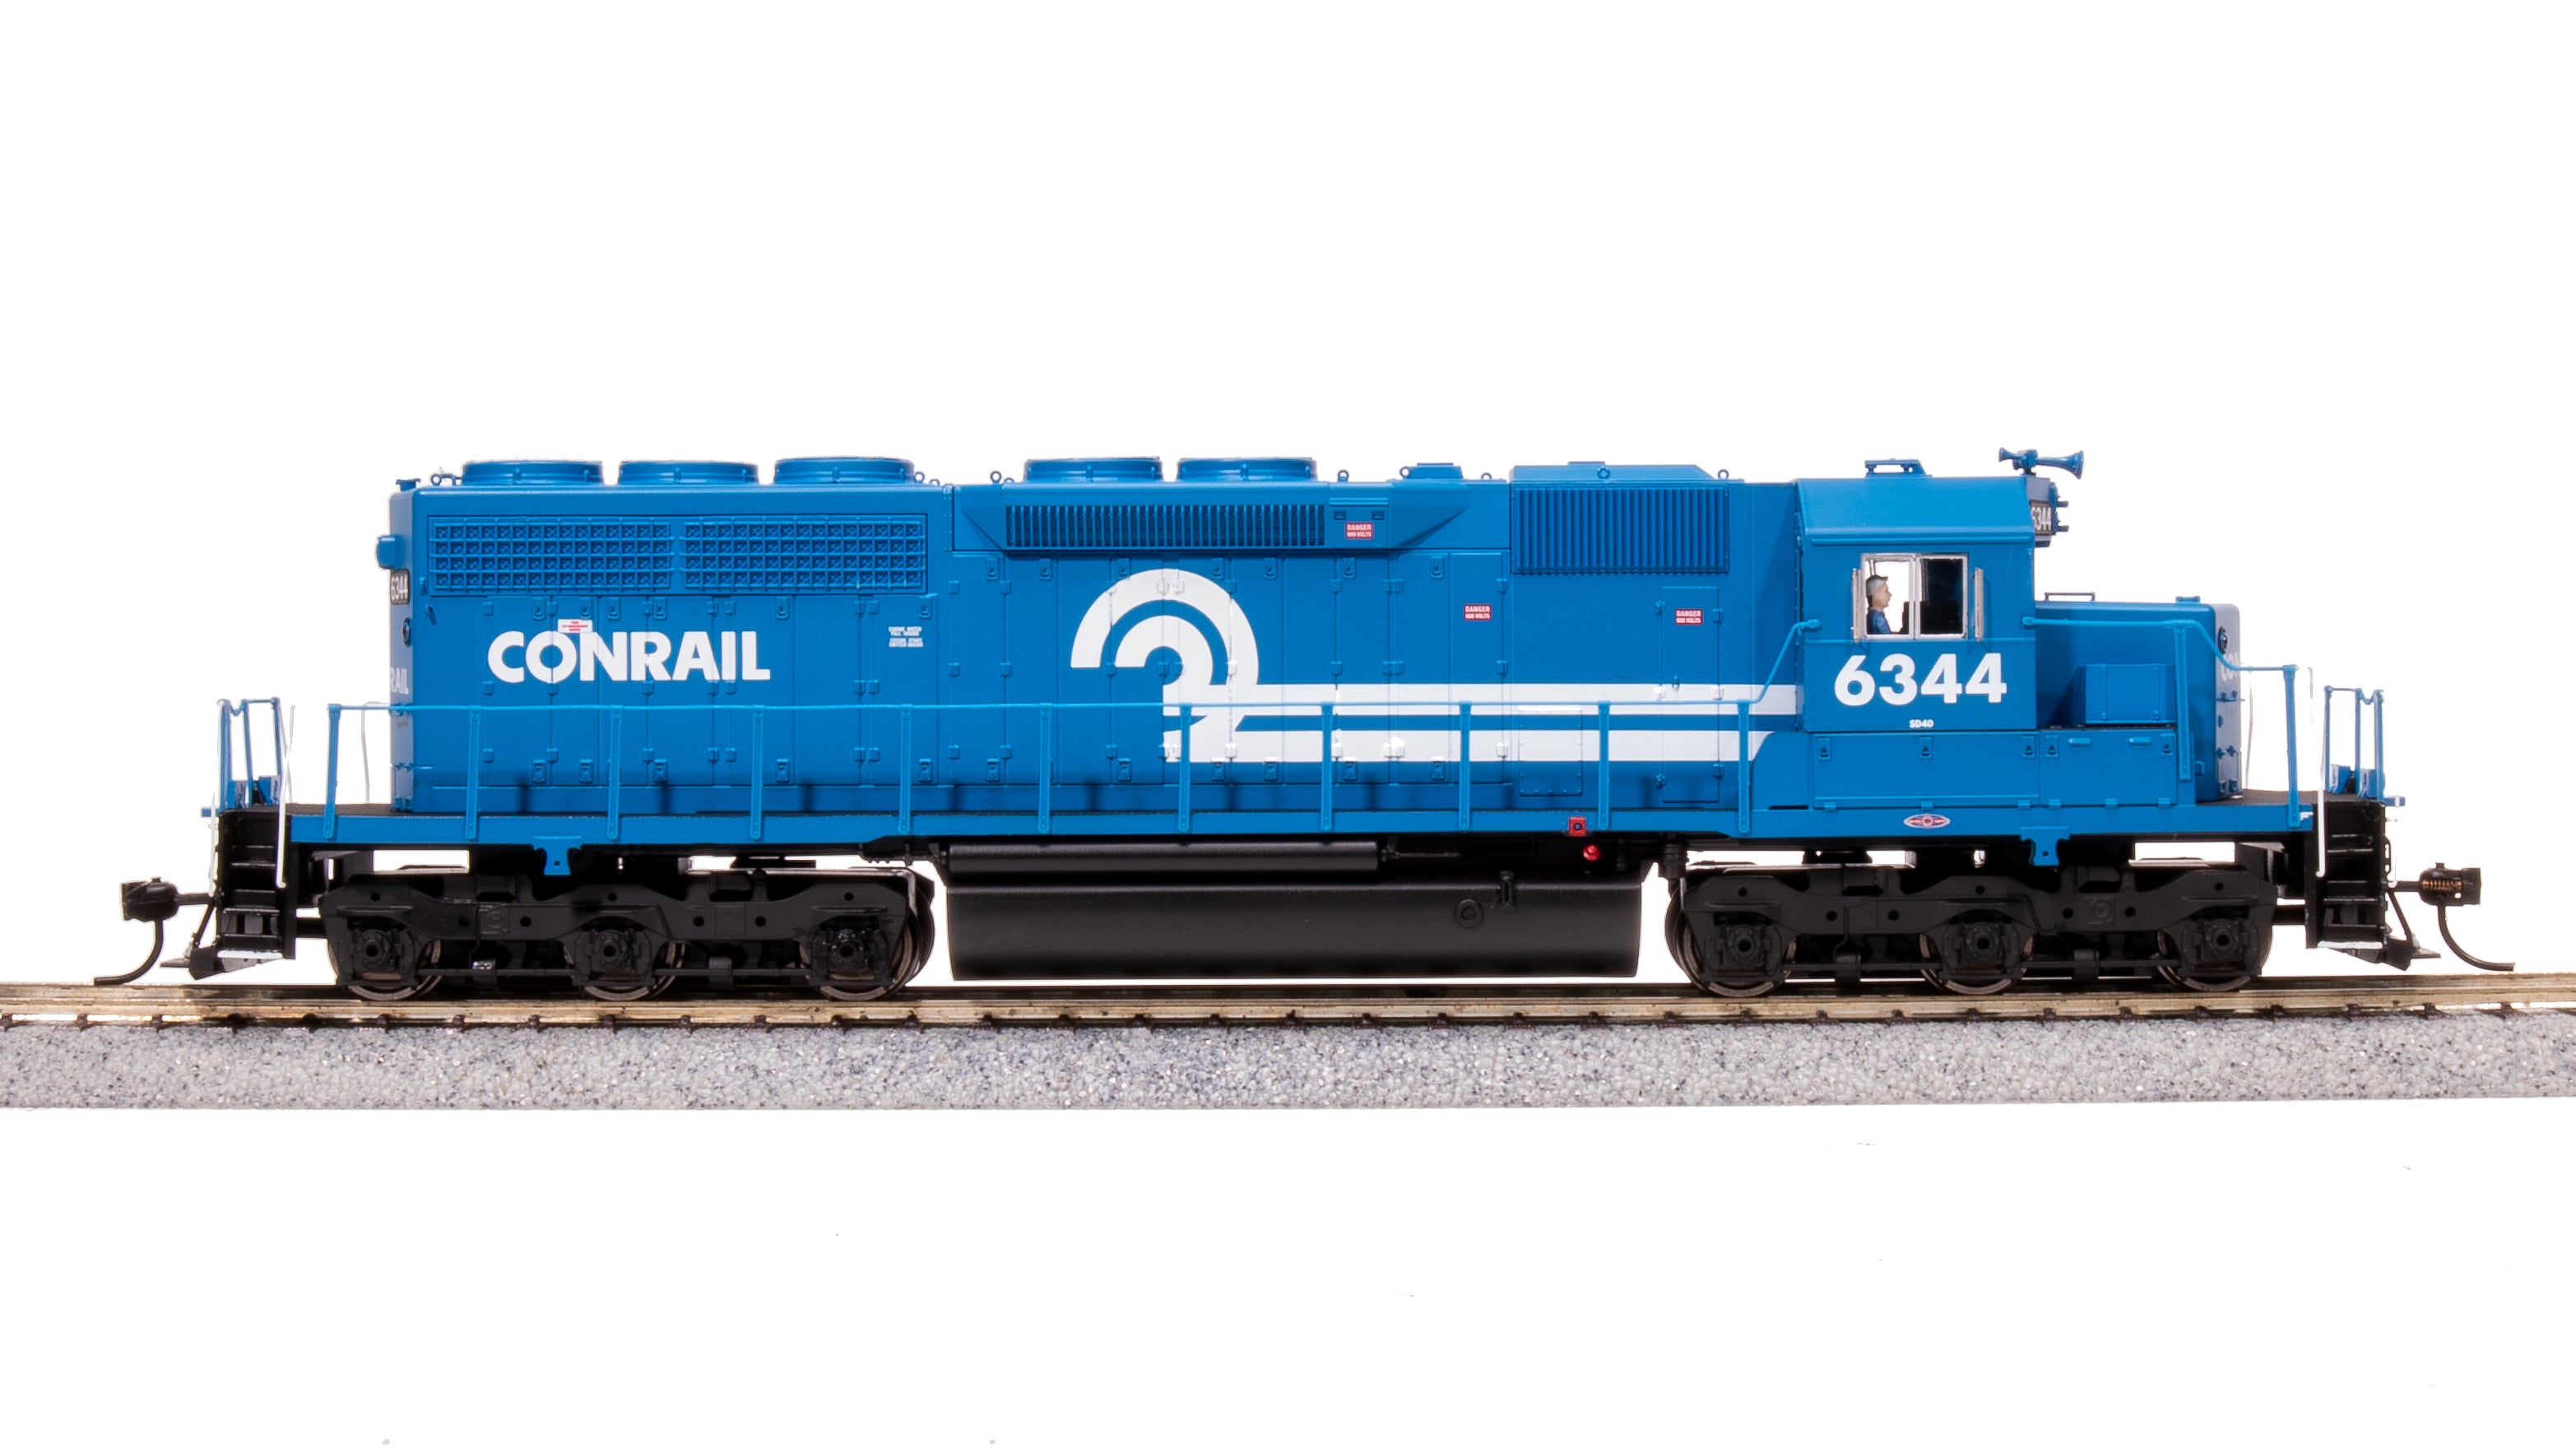 7638 EMD SD40, CR 6344, Conrail Blue, Paragon4 Sound/DC/DCC, HO